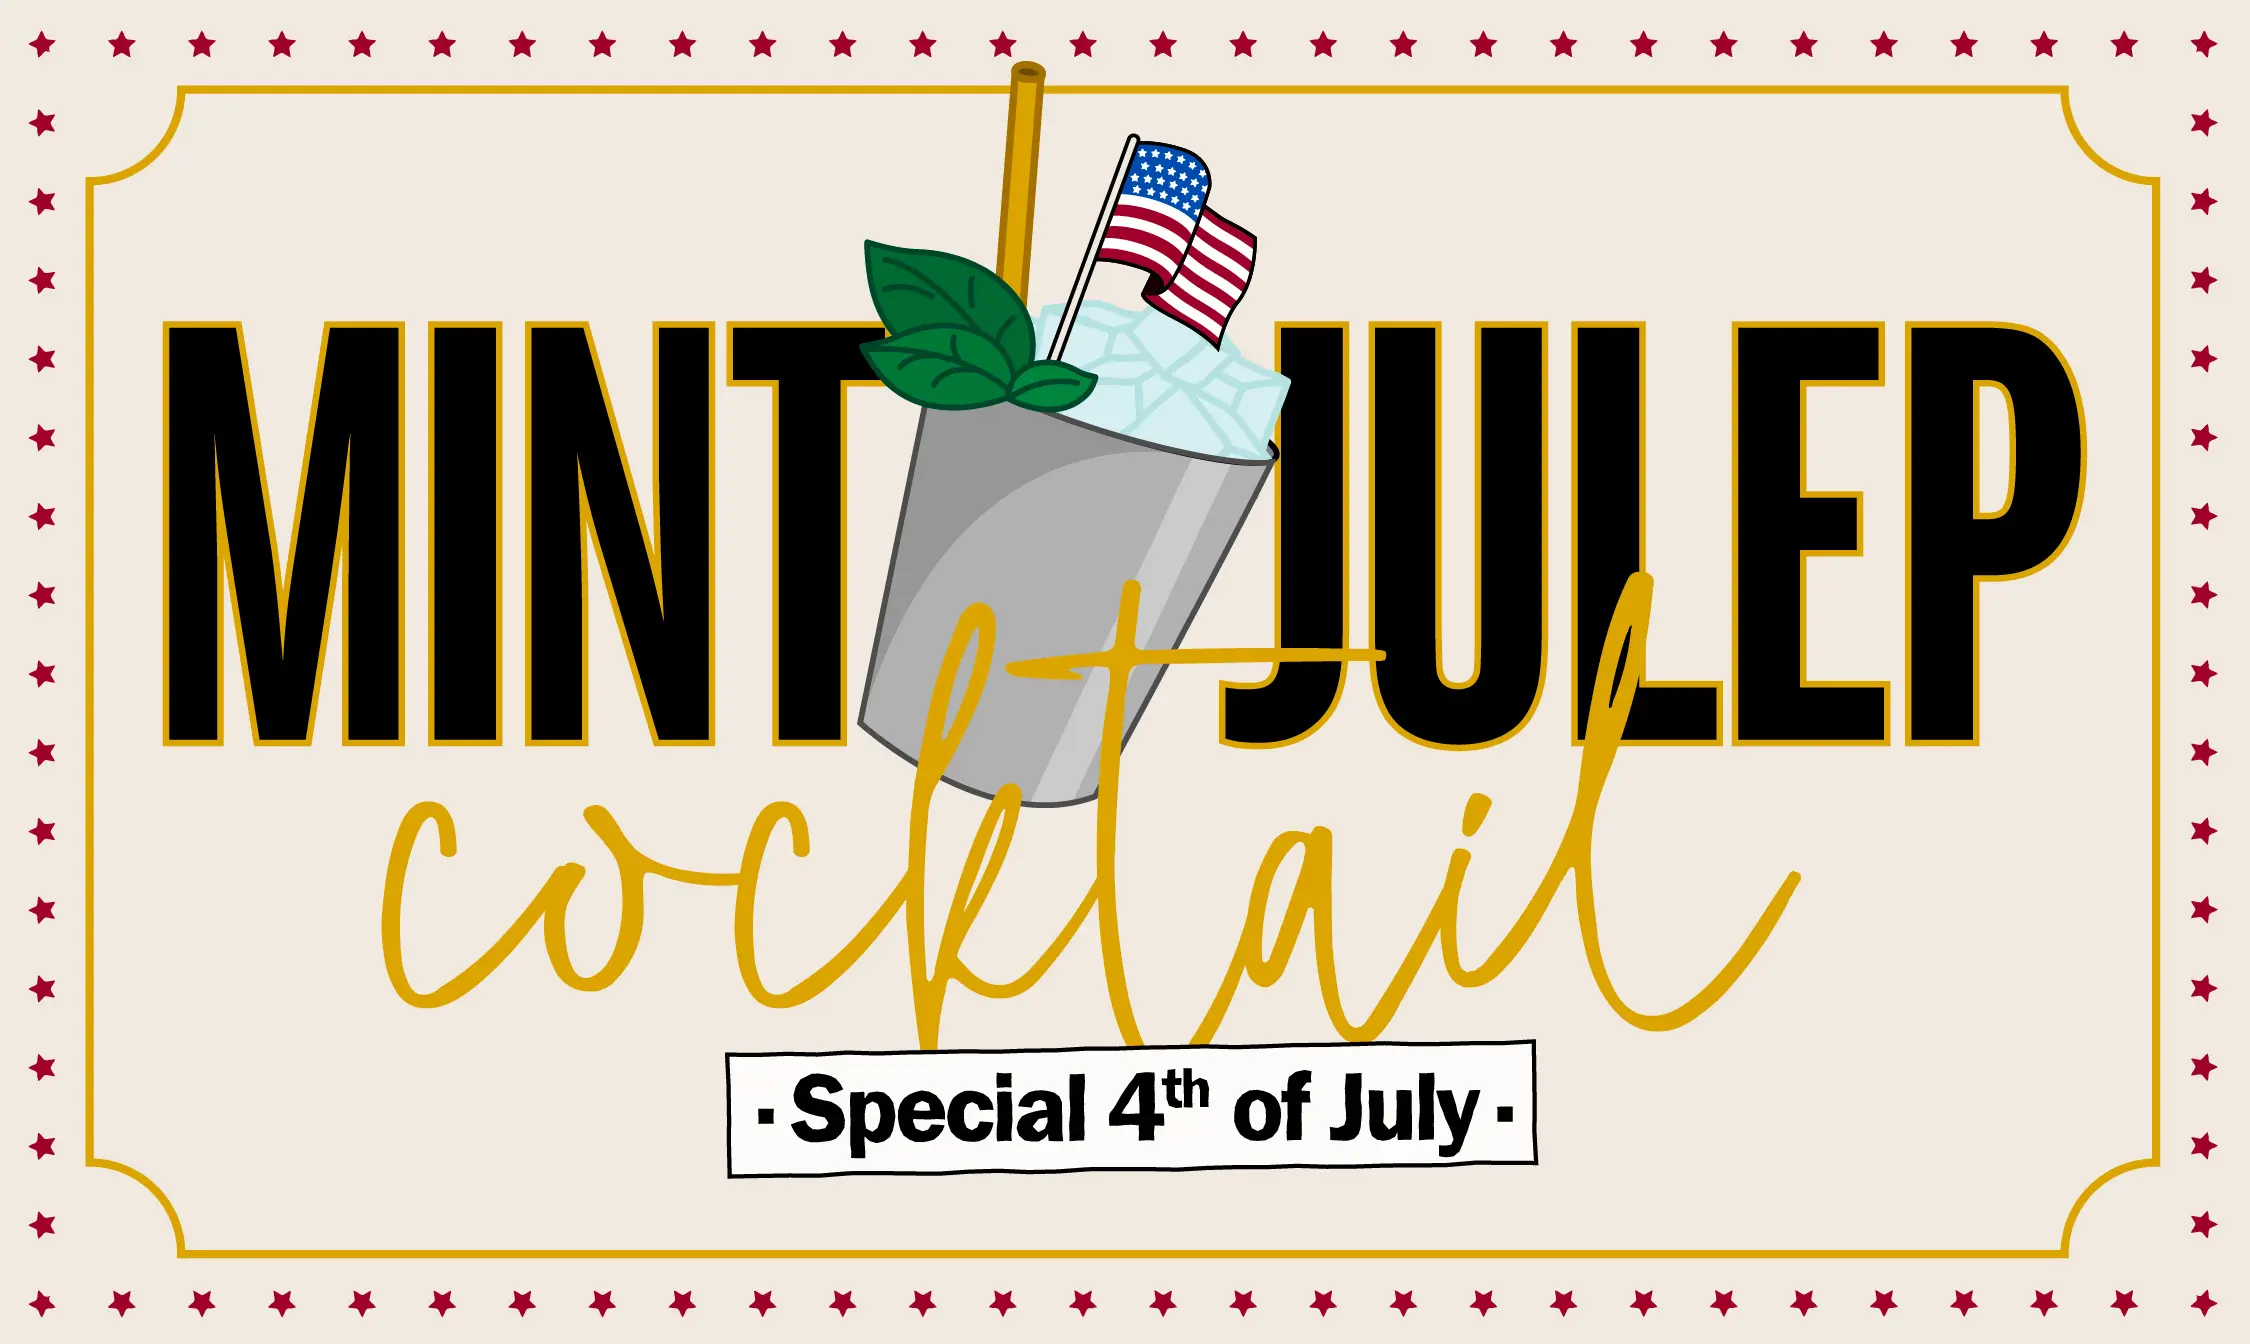 Mint Julep : Patrick revisite un cocktail emblématique pour le 4th of July